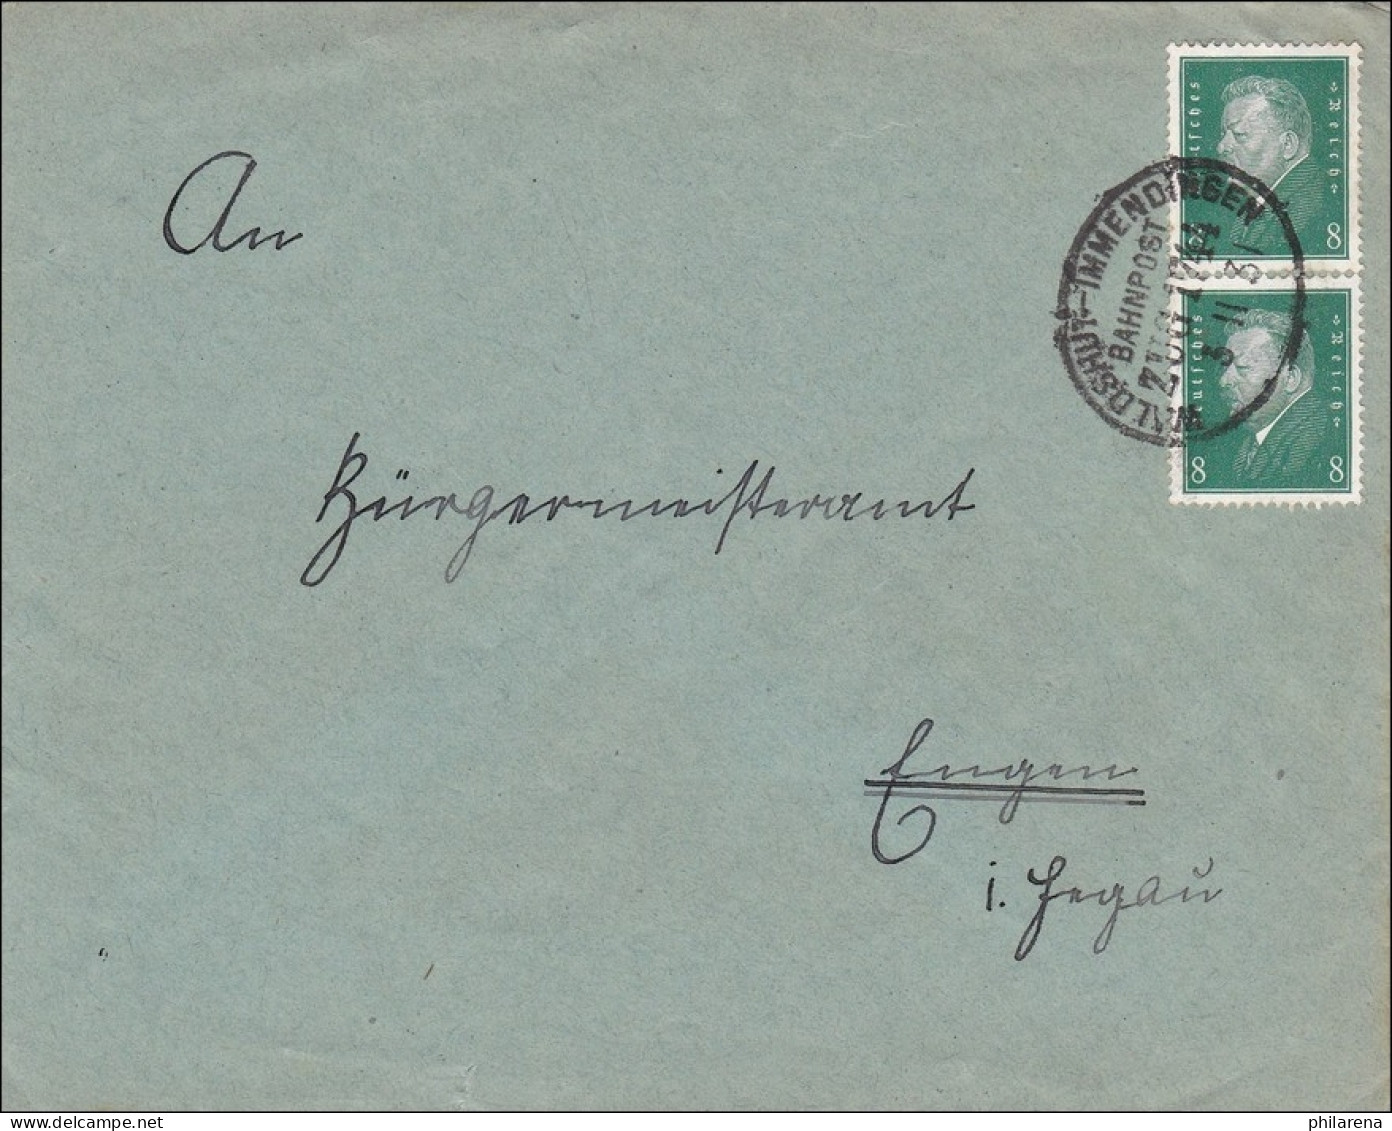 Bahnpost: Brief Mit Zugstempel Waldshut-Immendingen 1931 - Brieven En Documenten